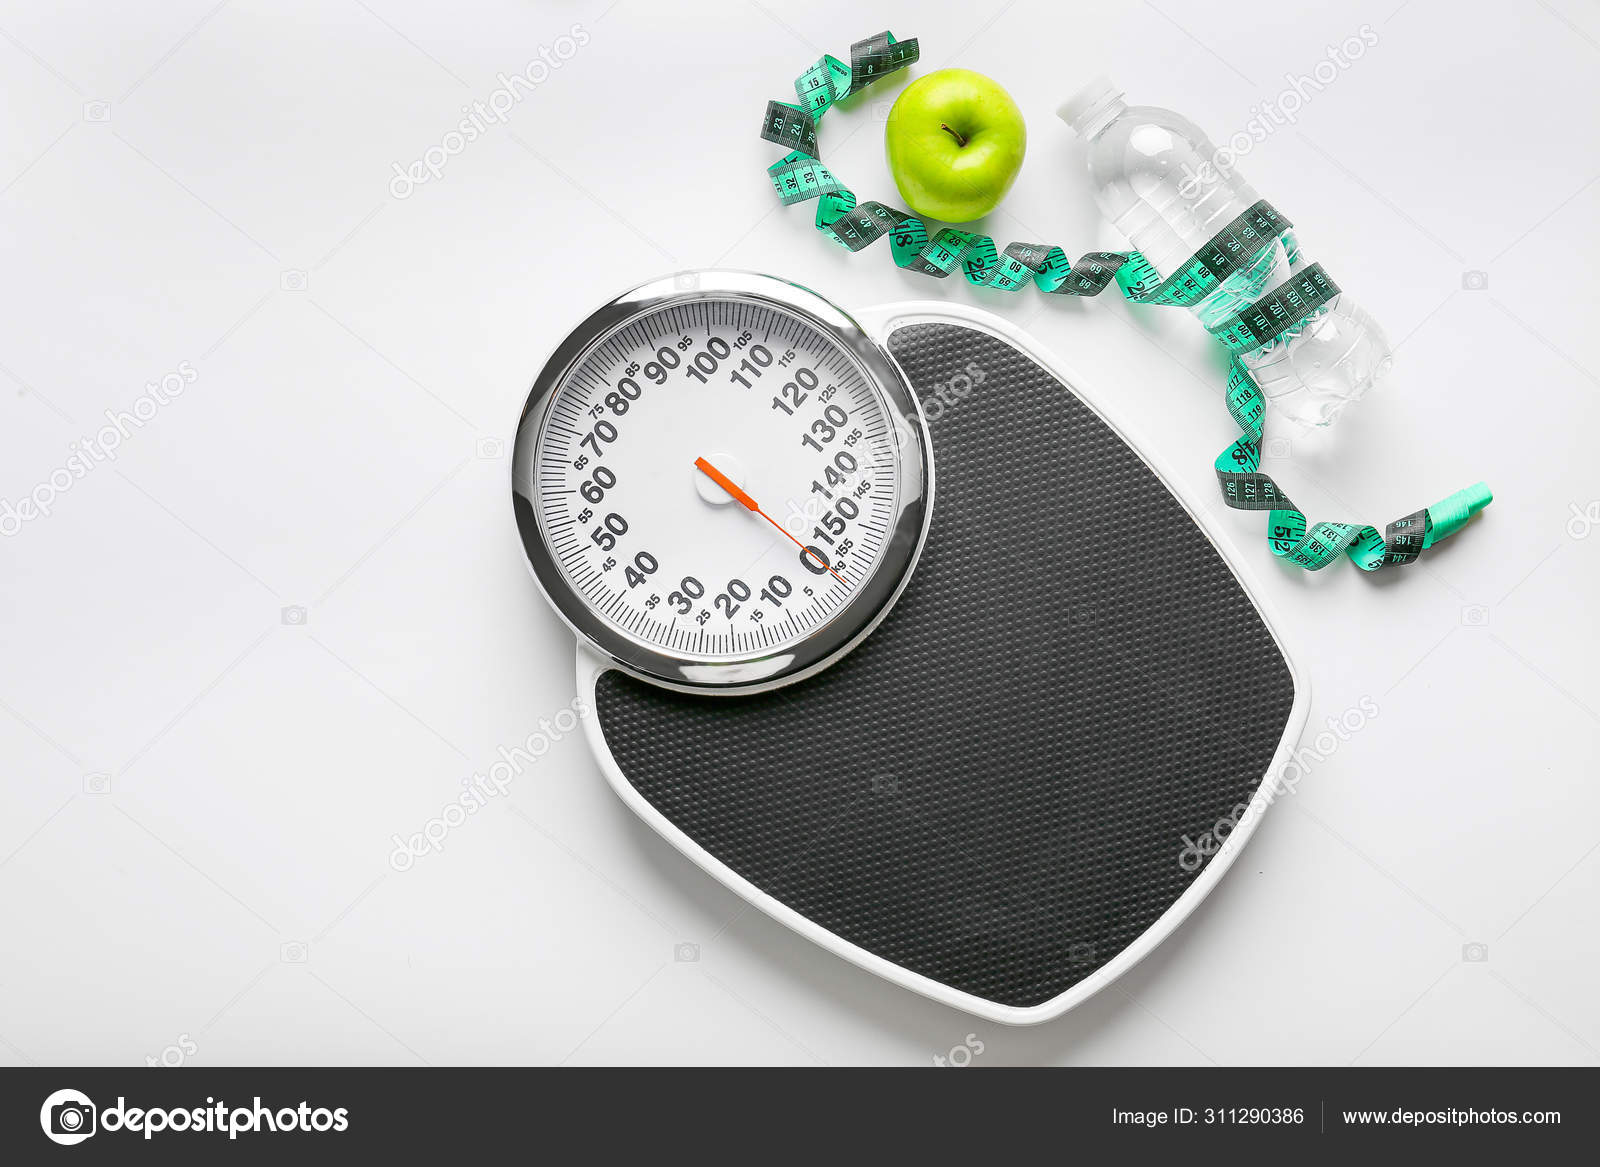 Grazing-diéta: így fogyj 2 hét alatt 5 kilót - mintaétrenddel! | elszivoernyobolt.hu